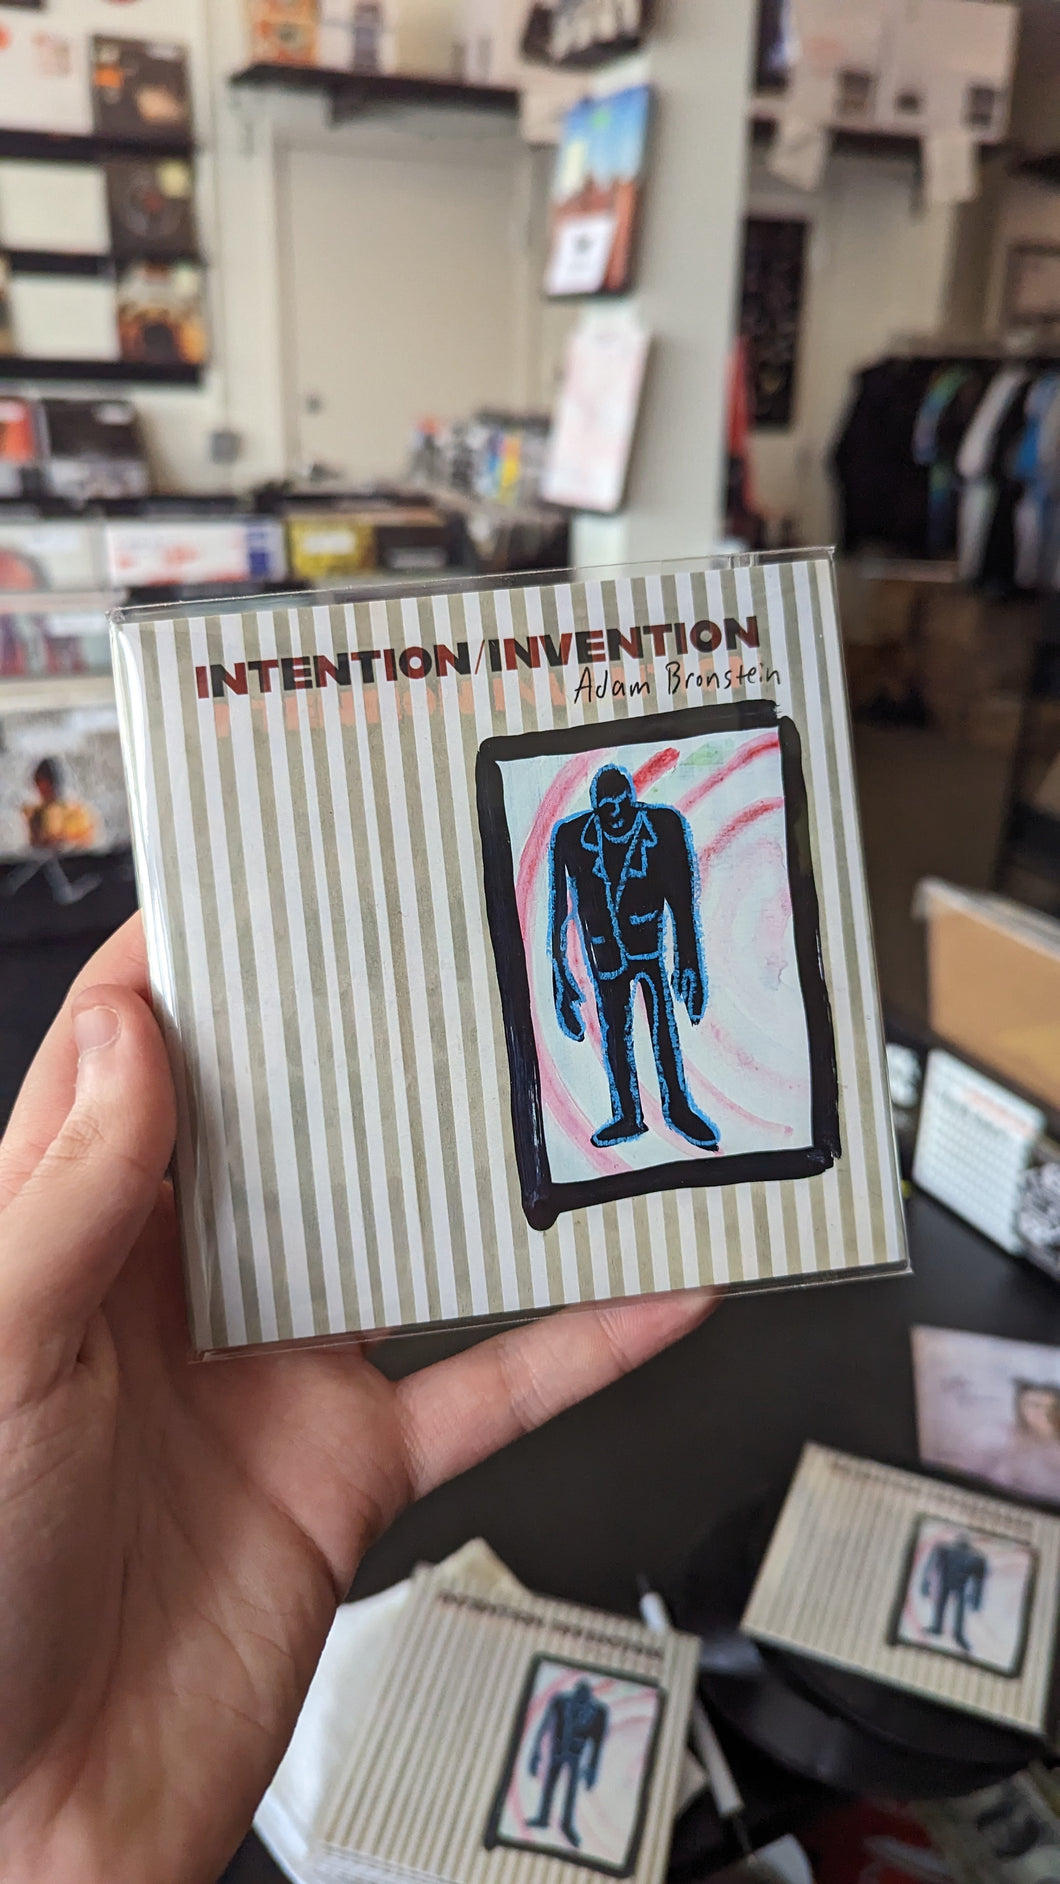 BRONSTEIN, ADAM - INTENTION / INVENTION CD